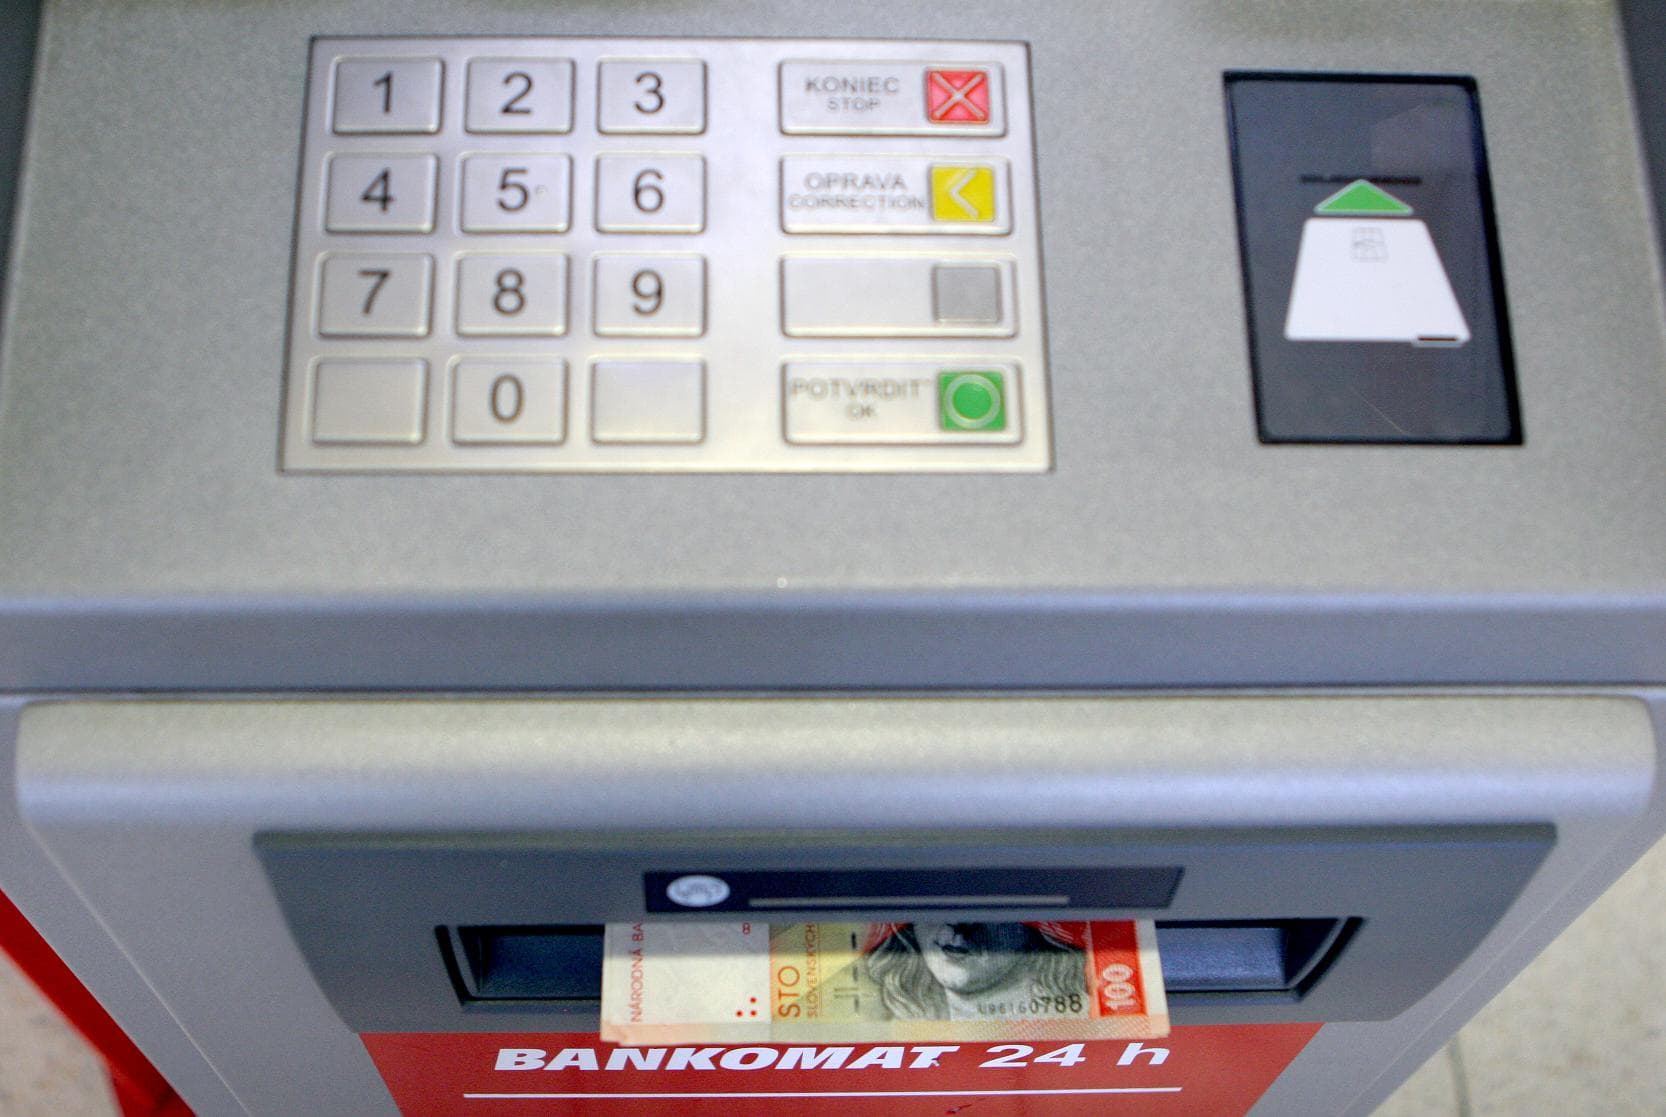 Ezért fontos, hogy legyünk körültekintőek a bankautomatáknál!